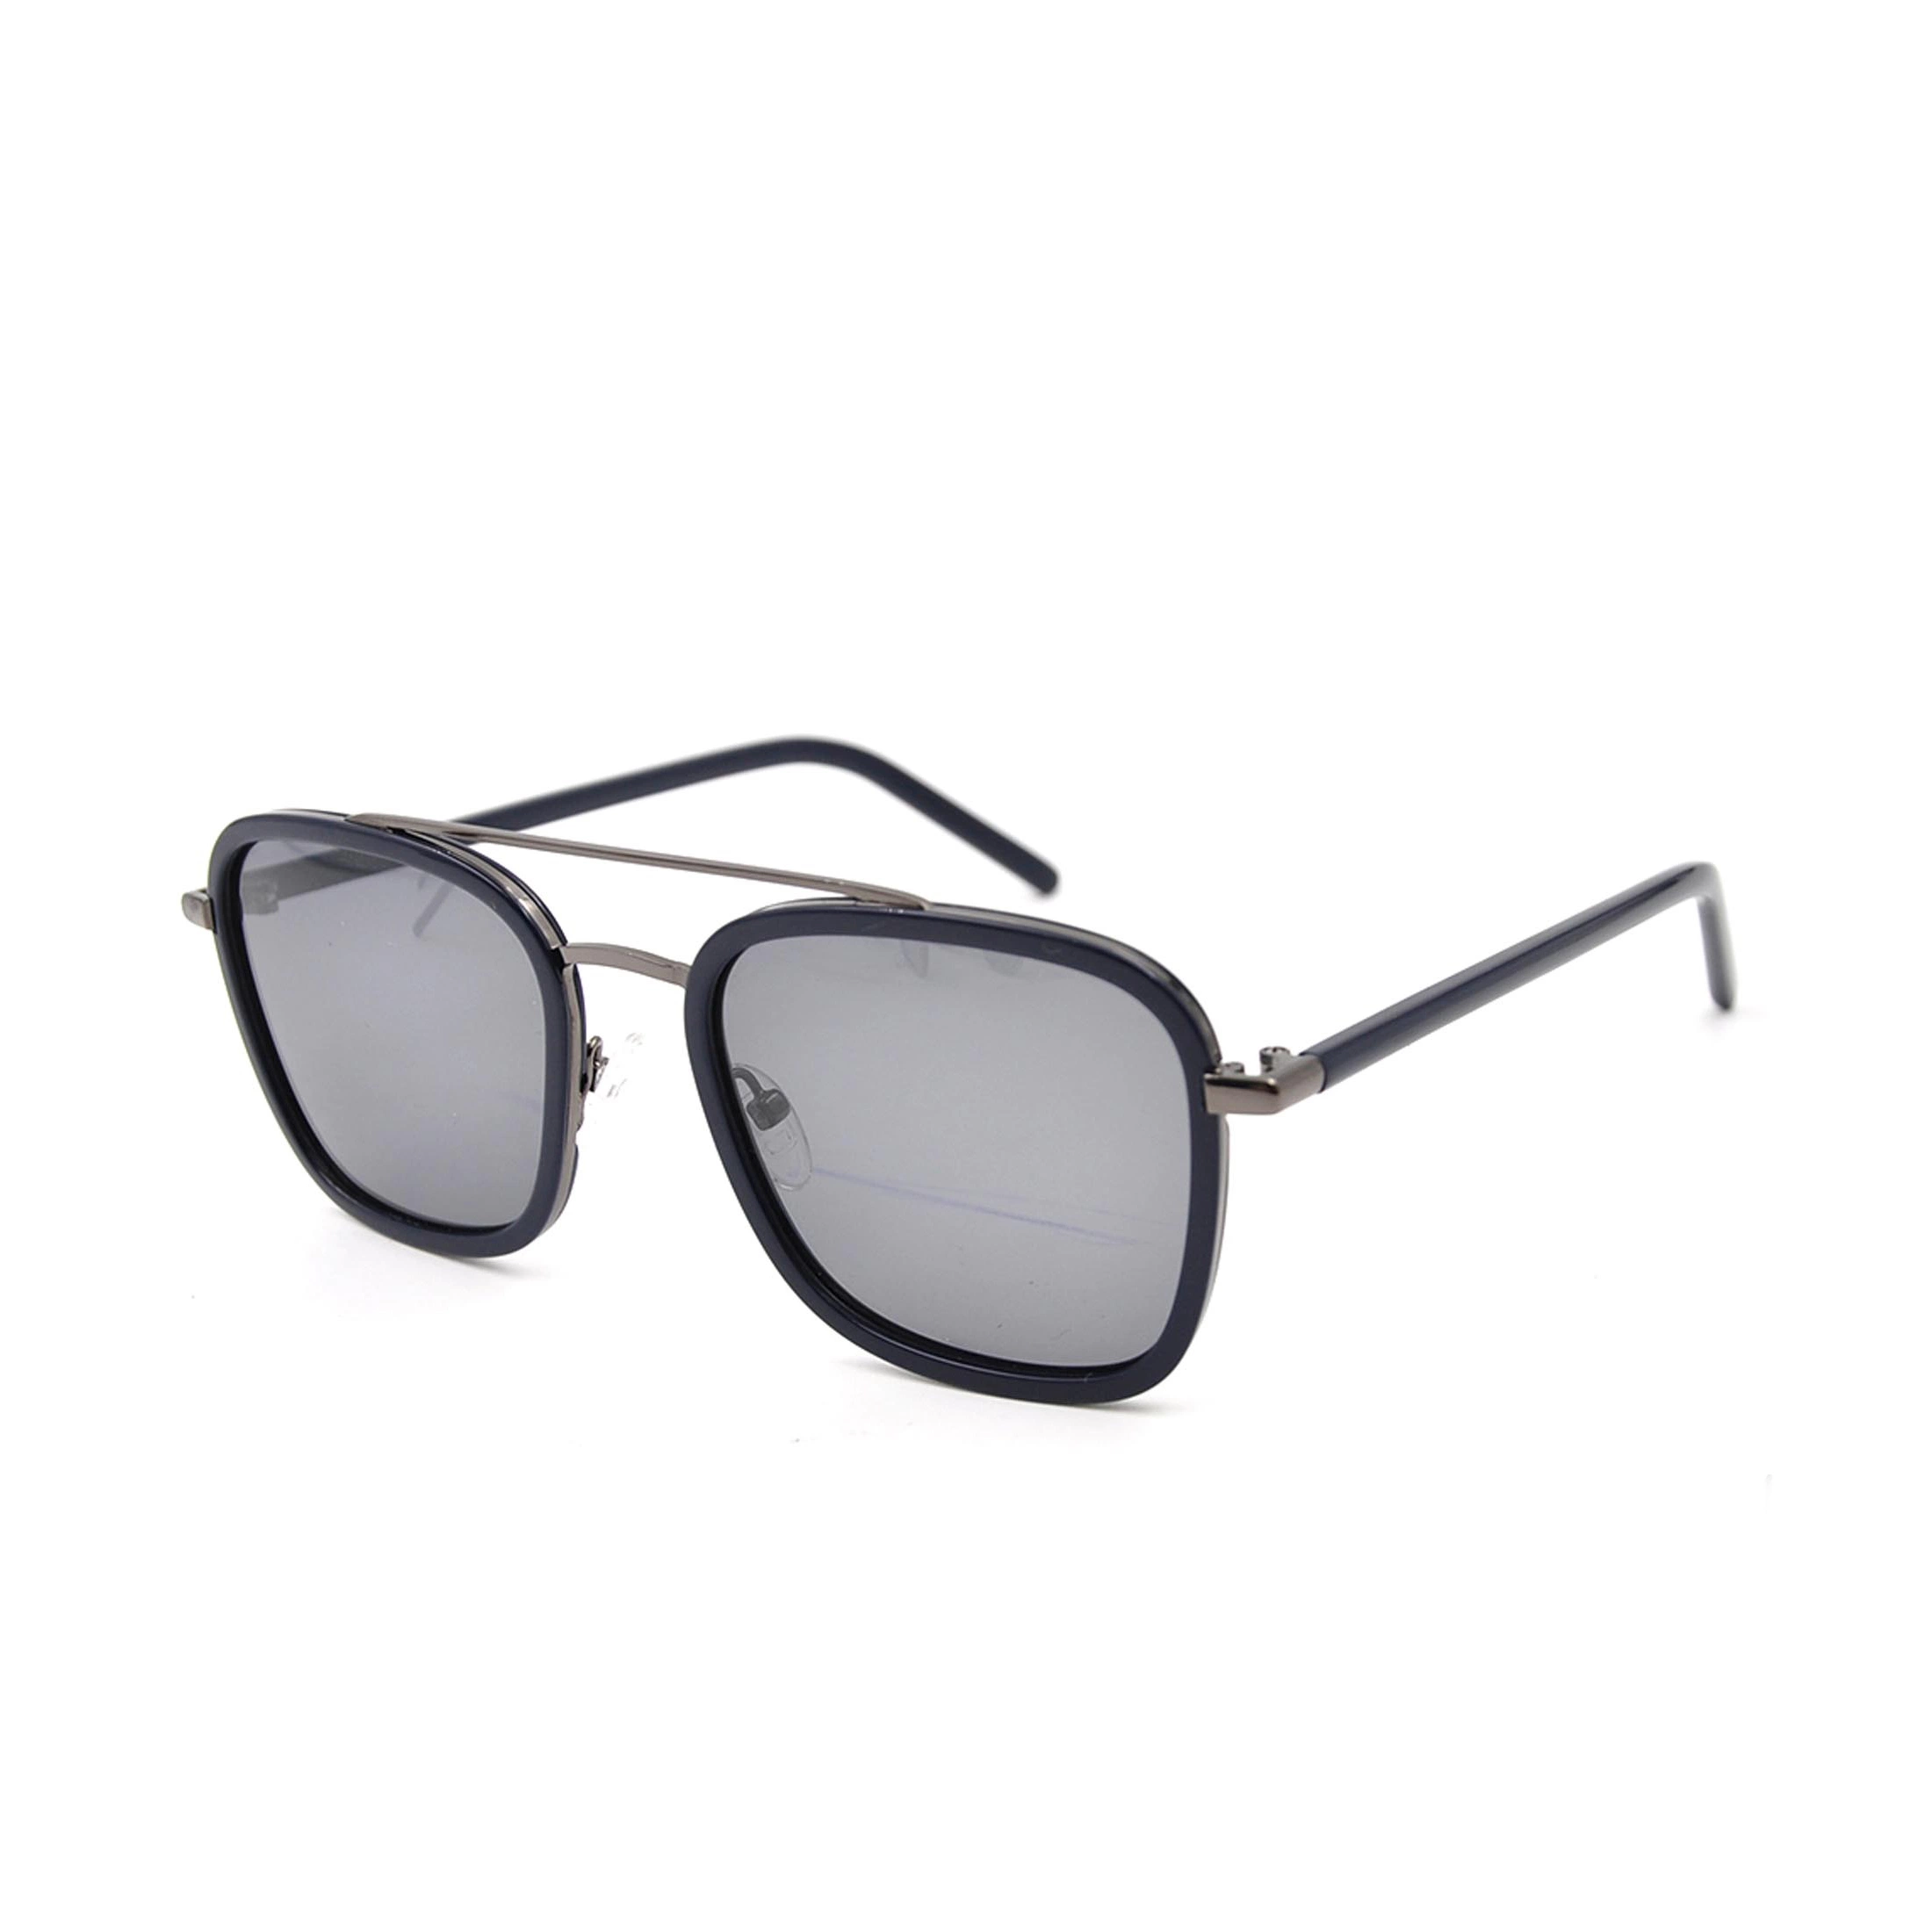 Gafas de sol Unisex bastidor metálico para los hombres y mujeres gafas